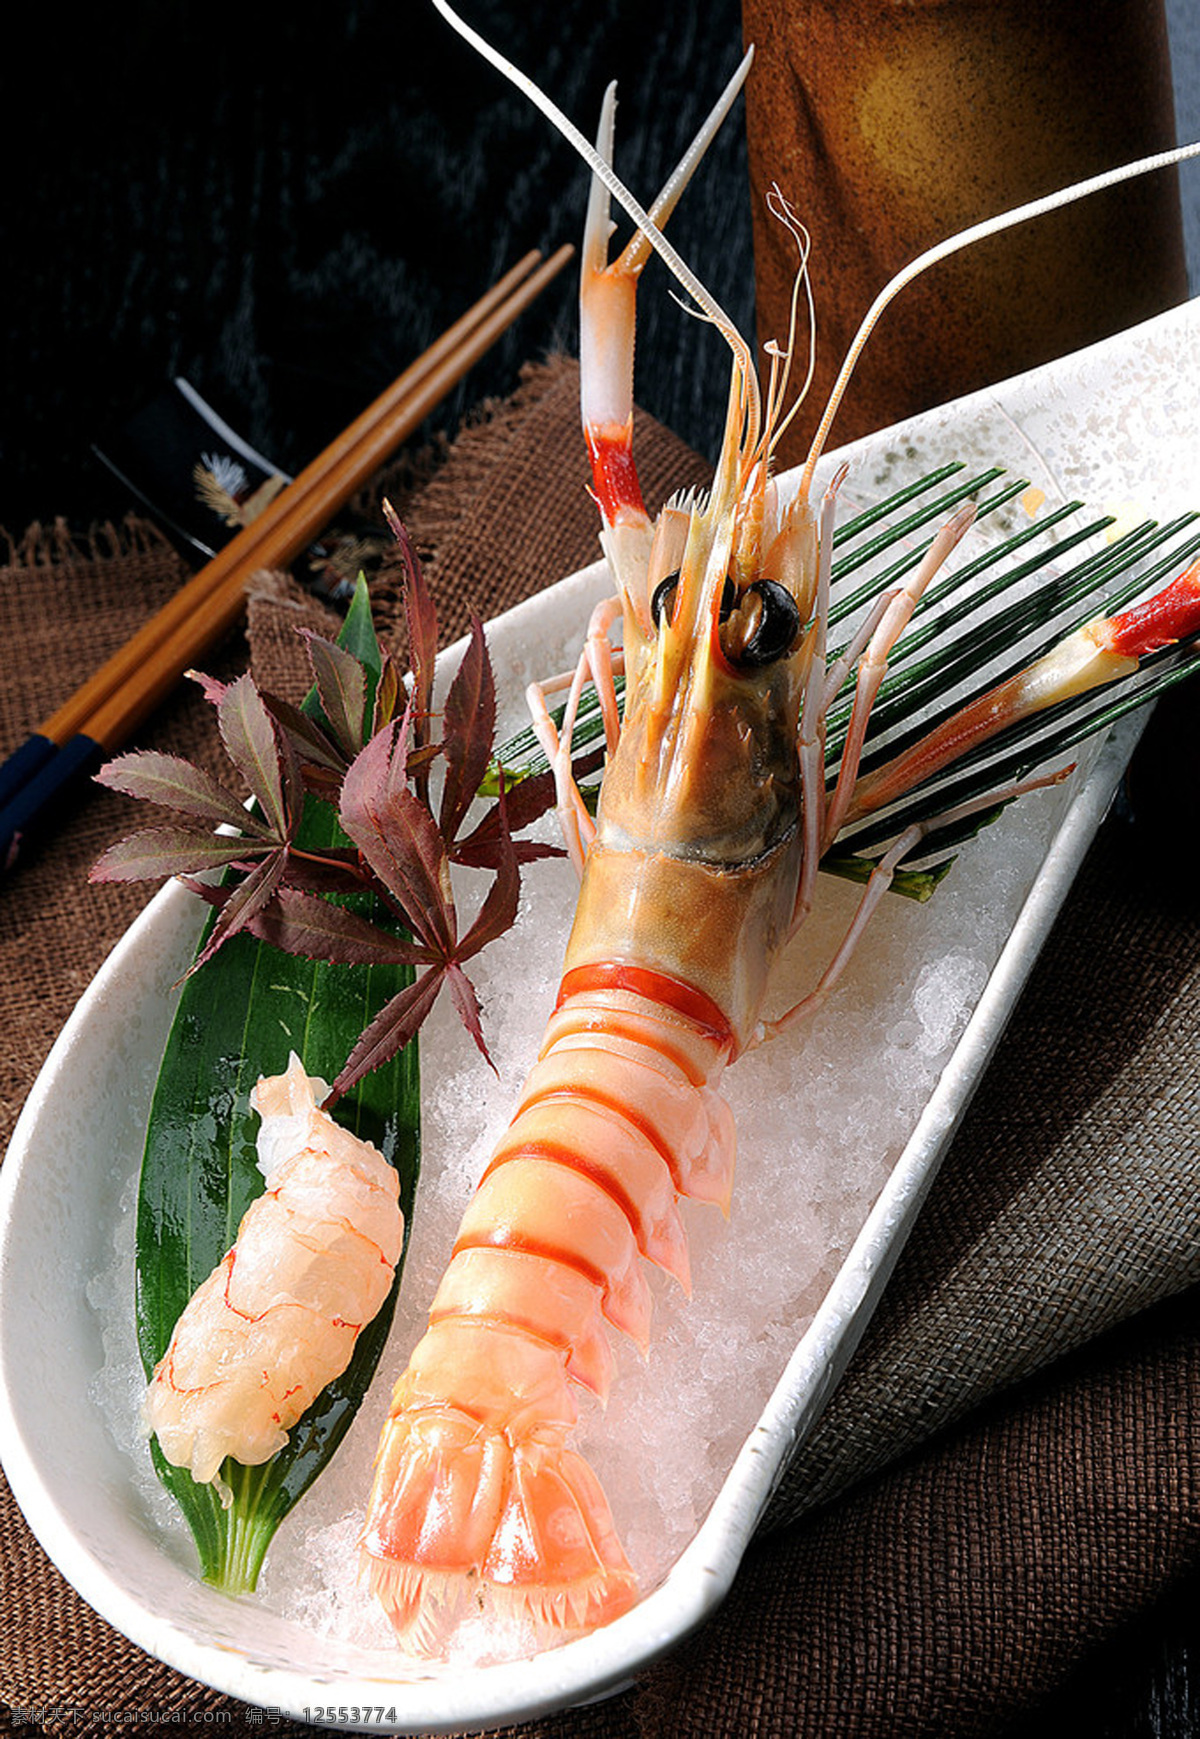 牡丹虾刺身 刺身 虾刺身 鲜虾刺身 大虾刺身 菜品图 餐饮美食 传统美食